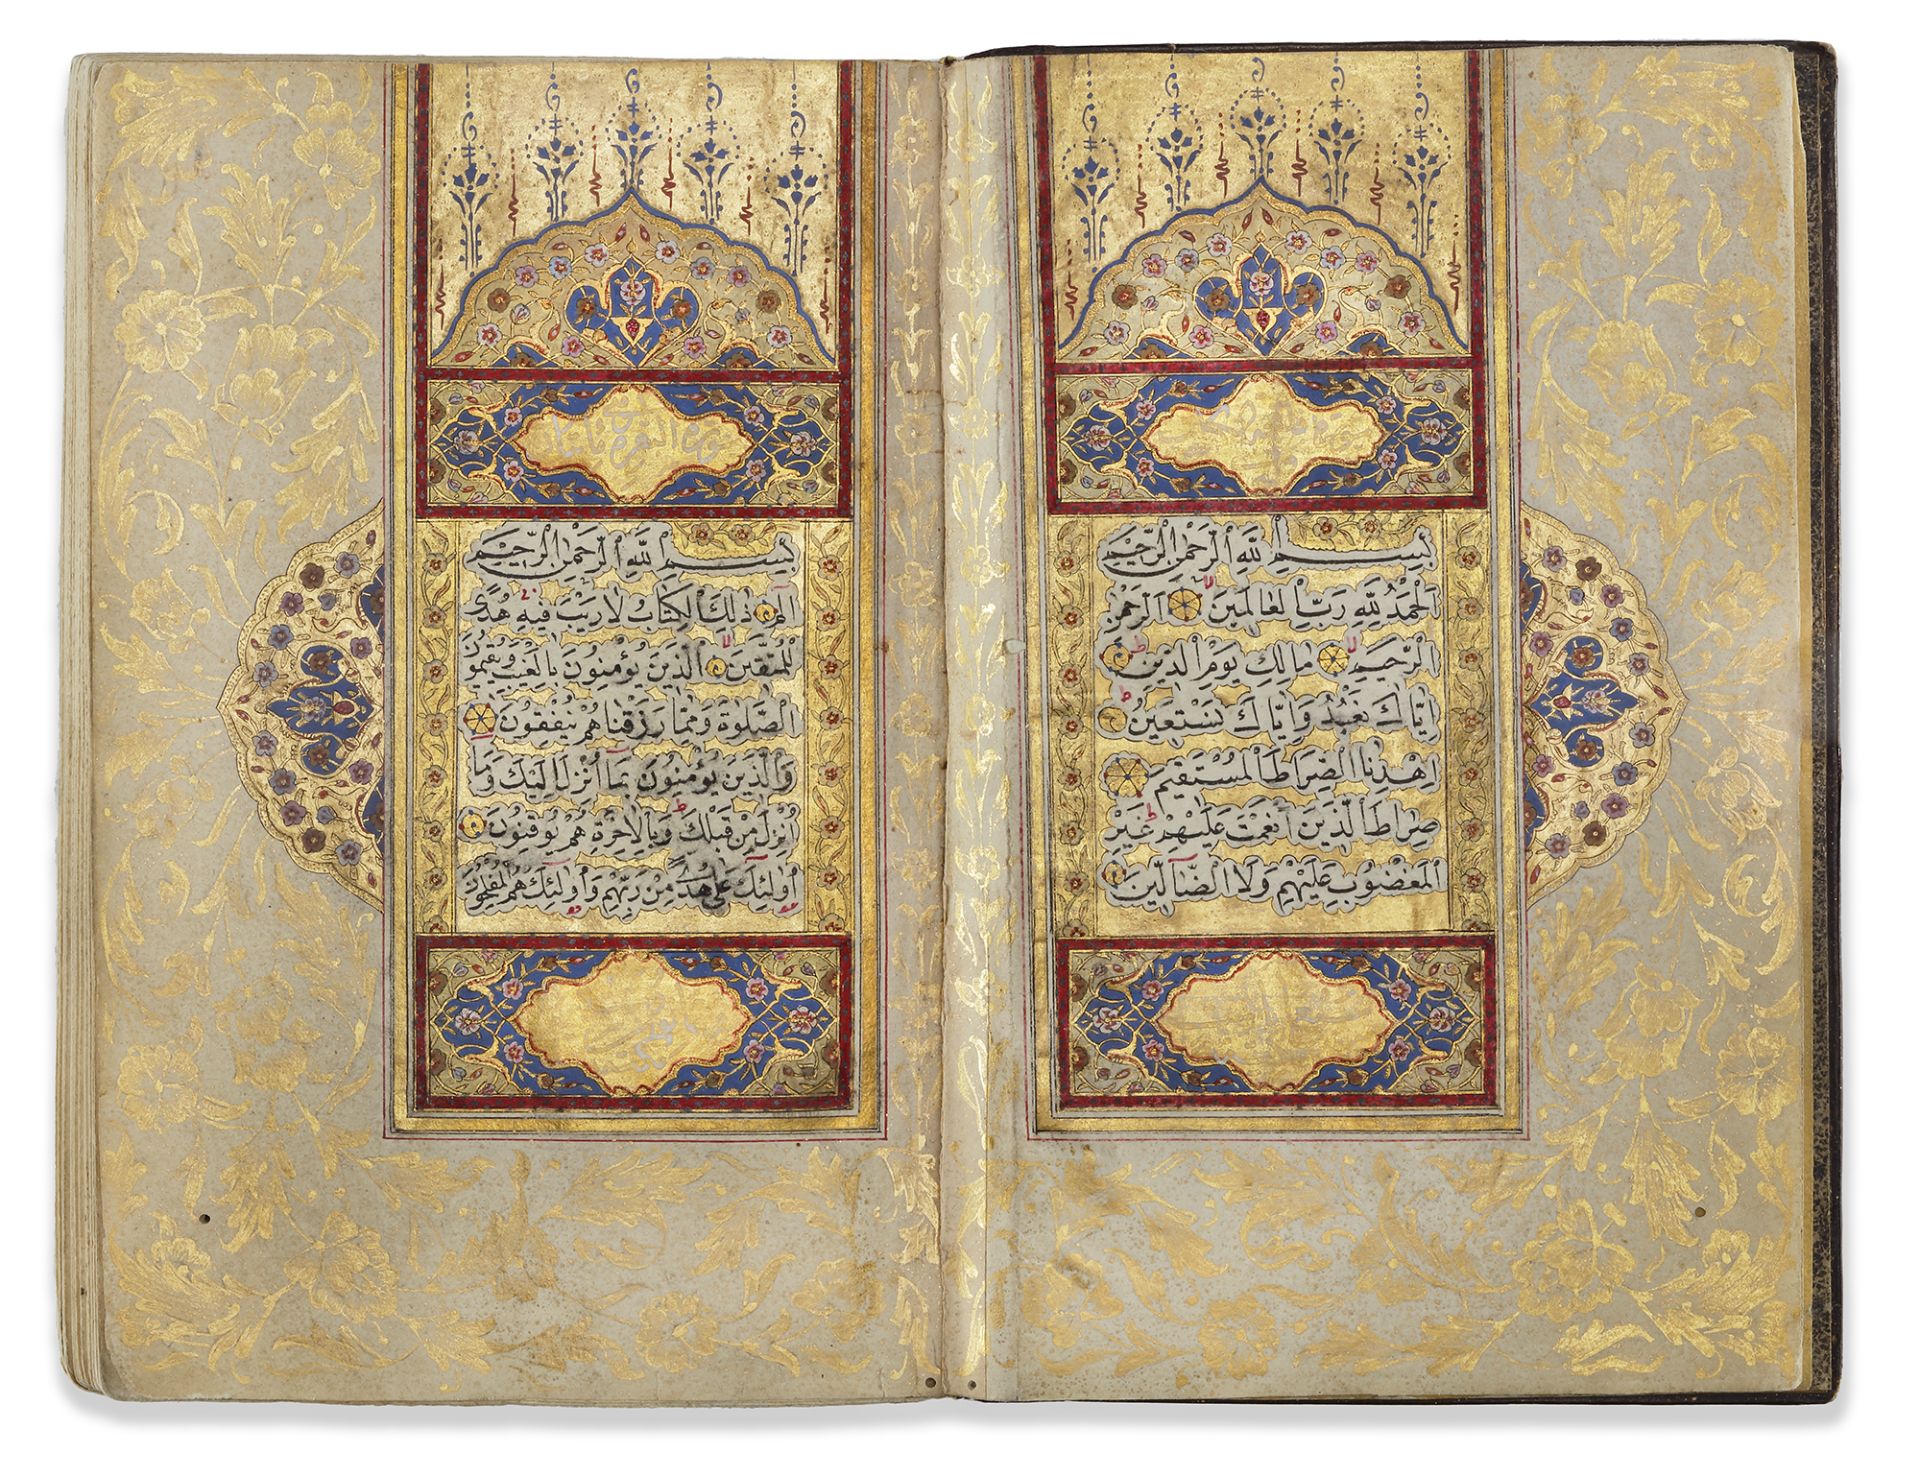 A QURAN SIGNED BY SEYYID ABDULKADIR EFENDI, OTTOMAN TURKEY, DATED 1142 AH/1729 AD